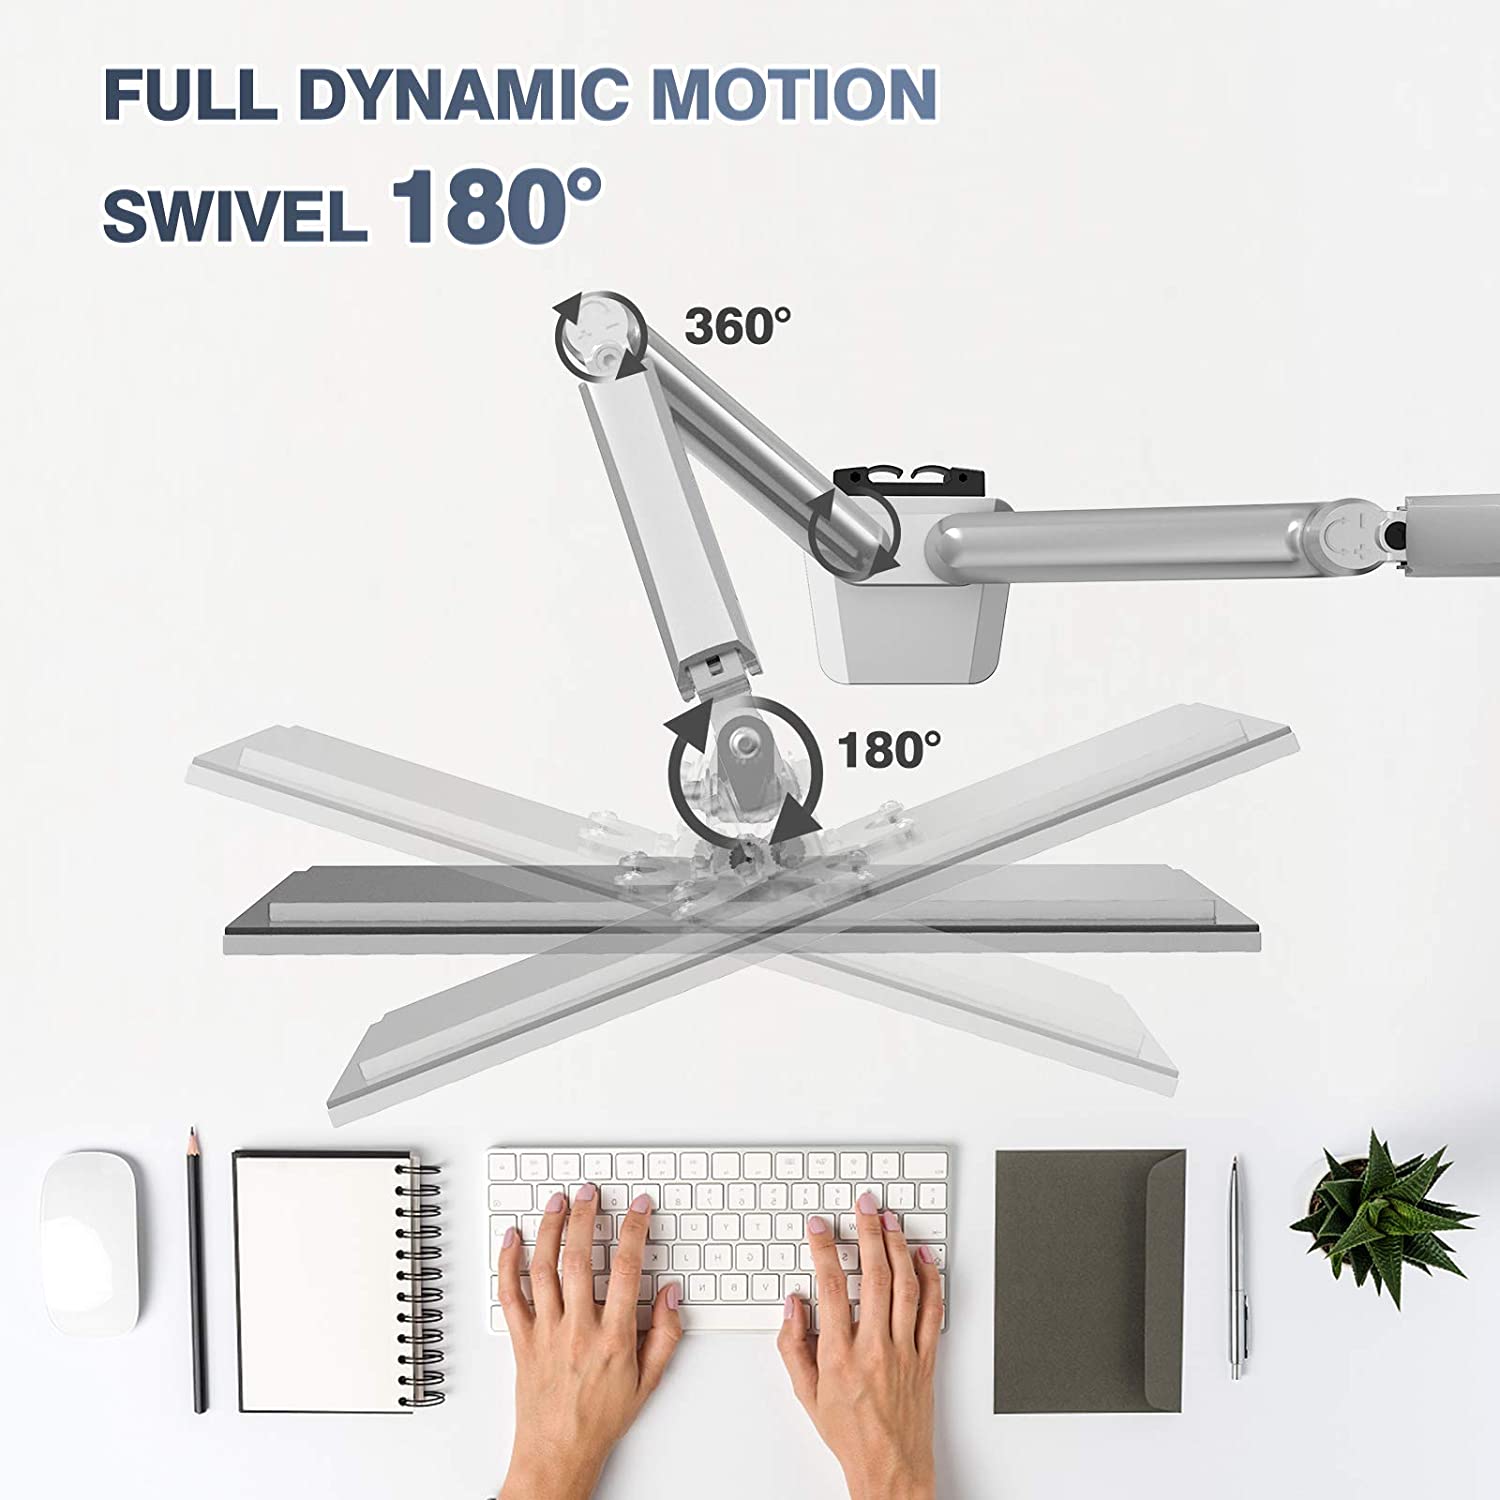 Dynafly Adjustable Monitor Arm